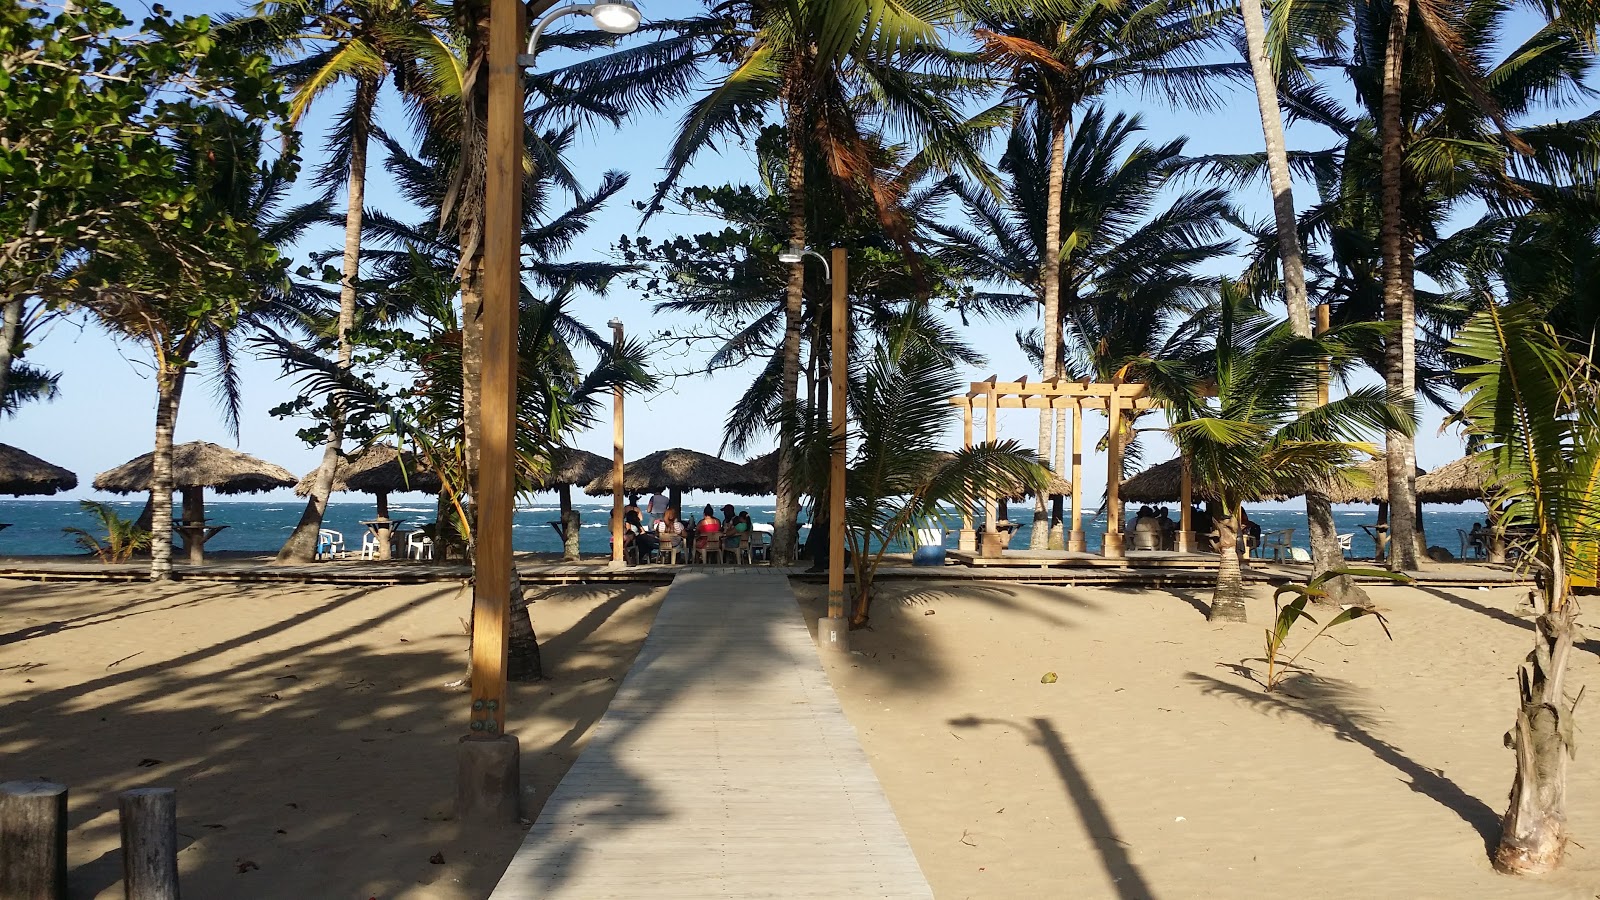 Foto af Playa Poza de Bojolo - populært sted blandt afslapningskendere